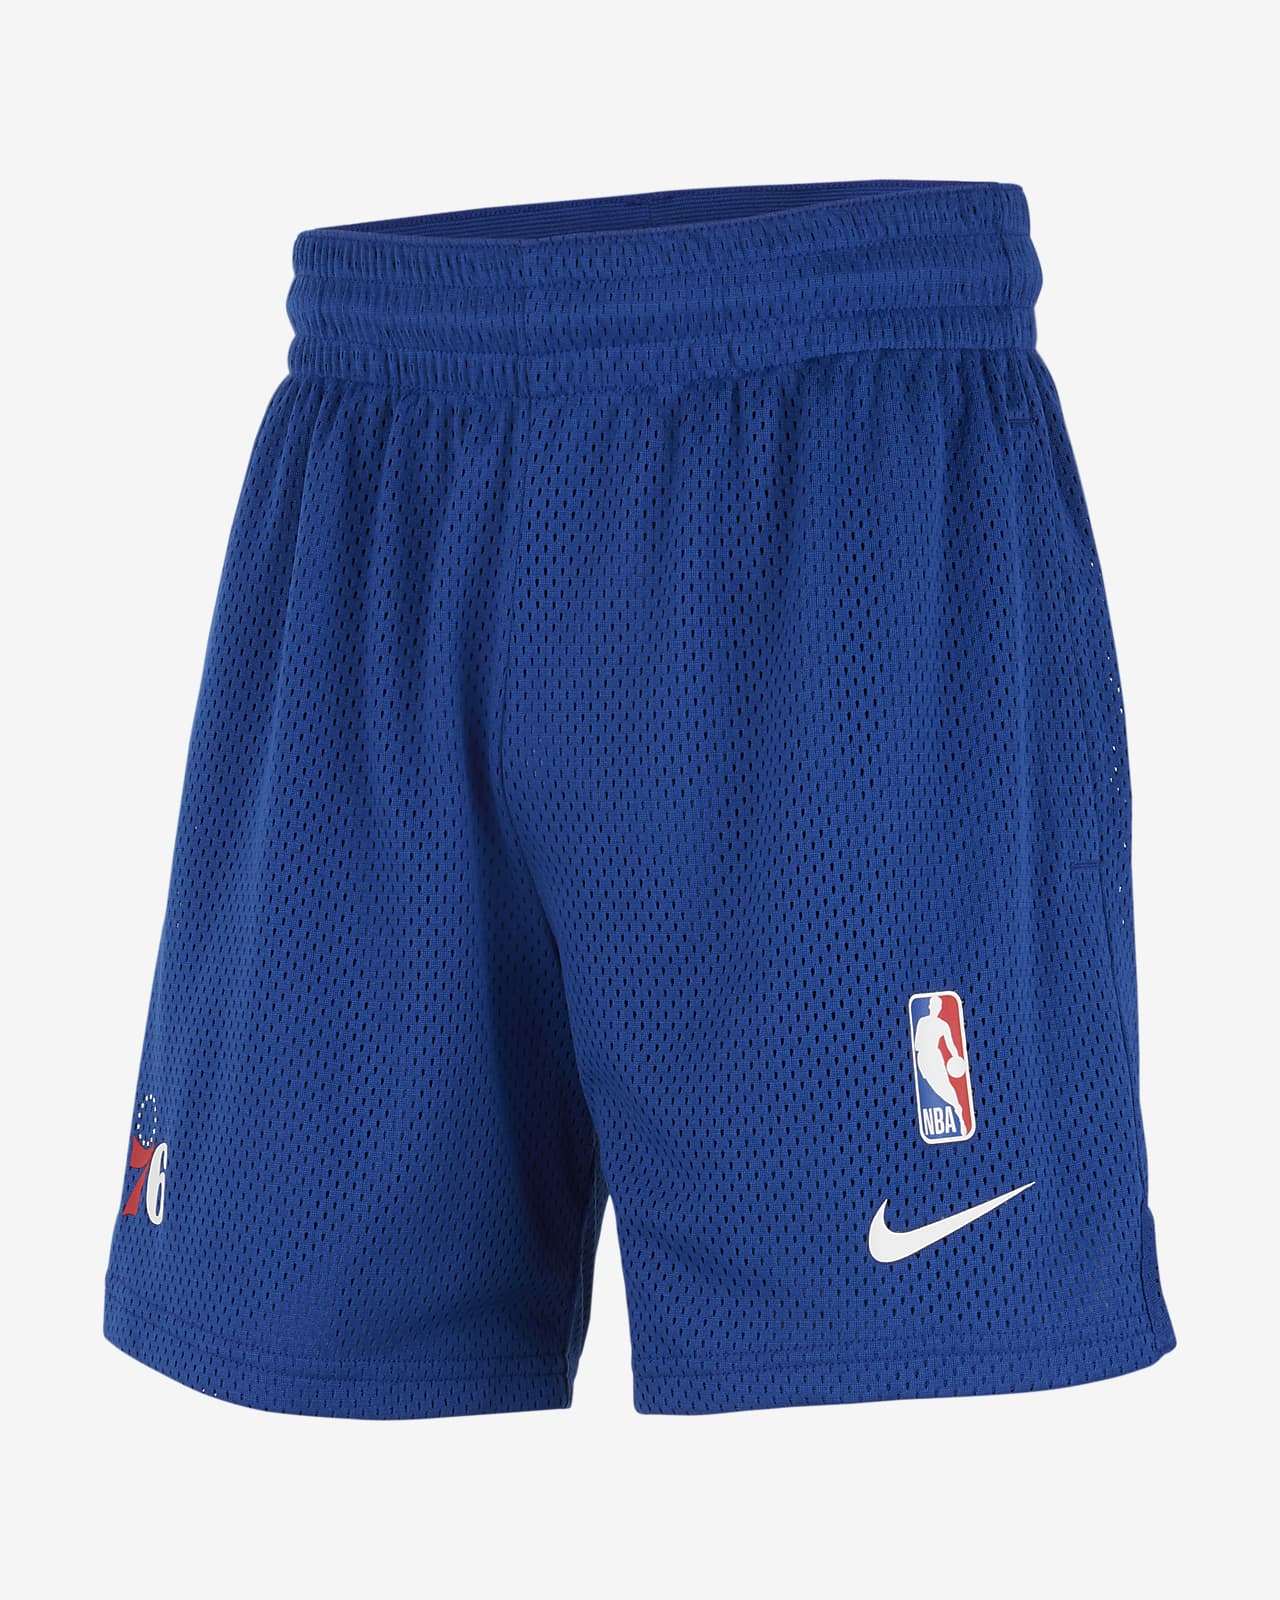 Philadelphia 76ers Spotlight Big Kids' Nike Dri-FIT NBA Shorts